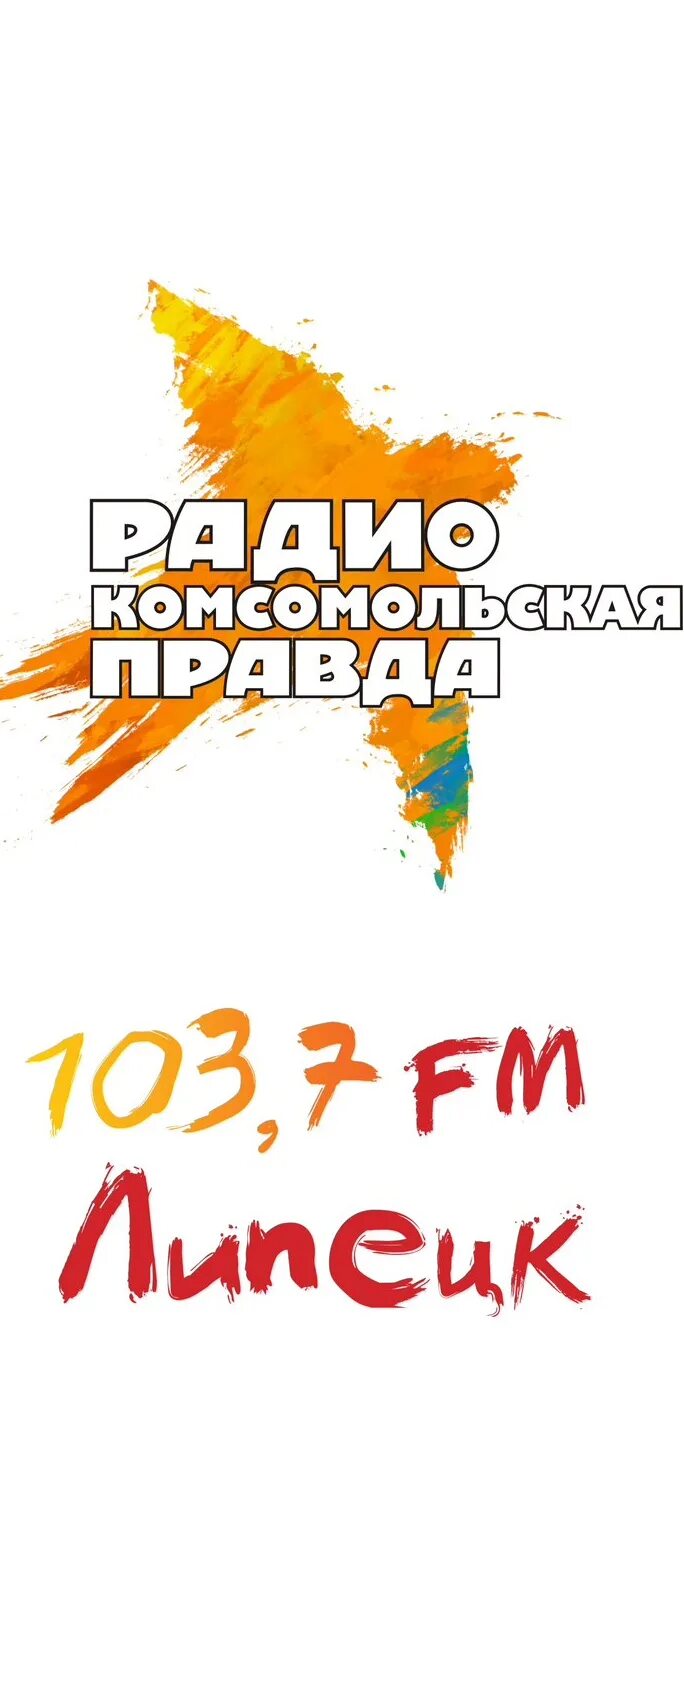 Сейчас радио комсомольская правда. Радио Комсомольская правда. Логотип радиостанции Комсомольская правда. Радио Комсомольская правда частота. Радио Комсомольская правда PNG.